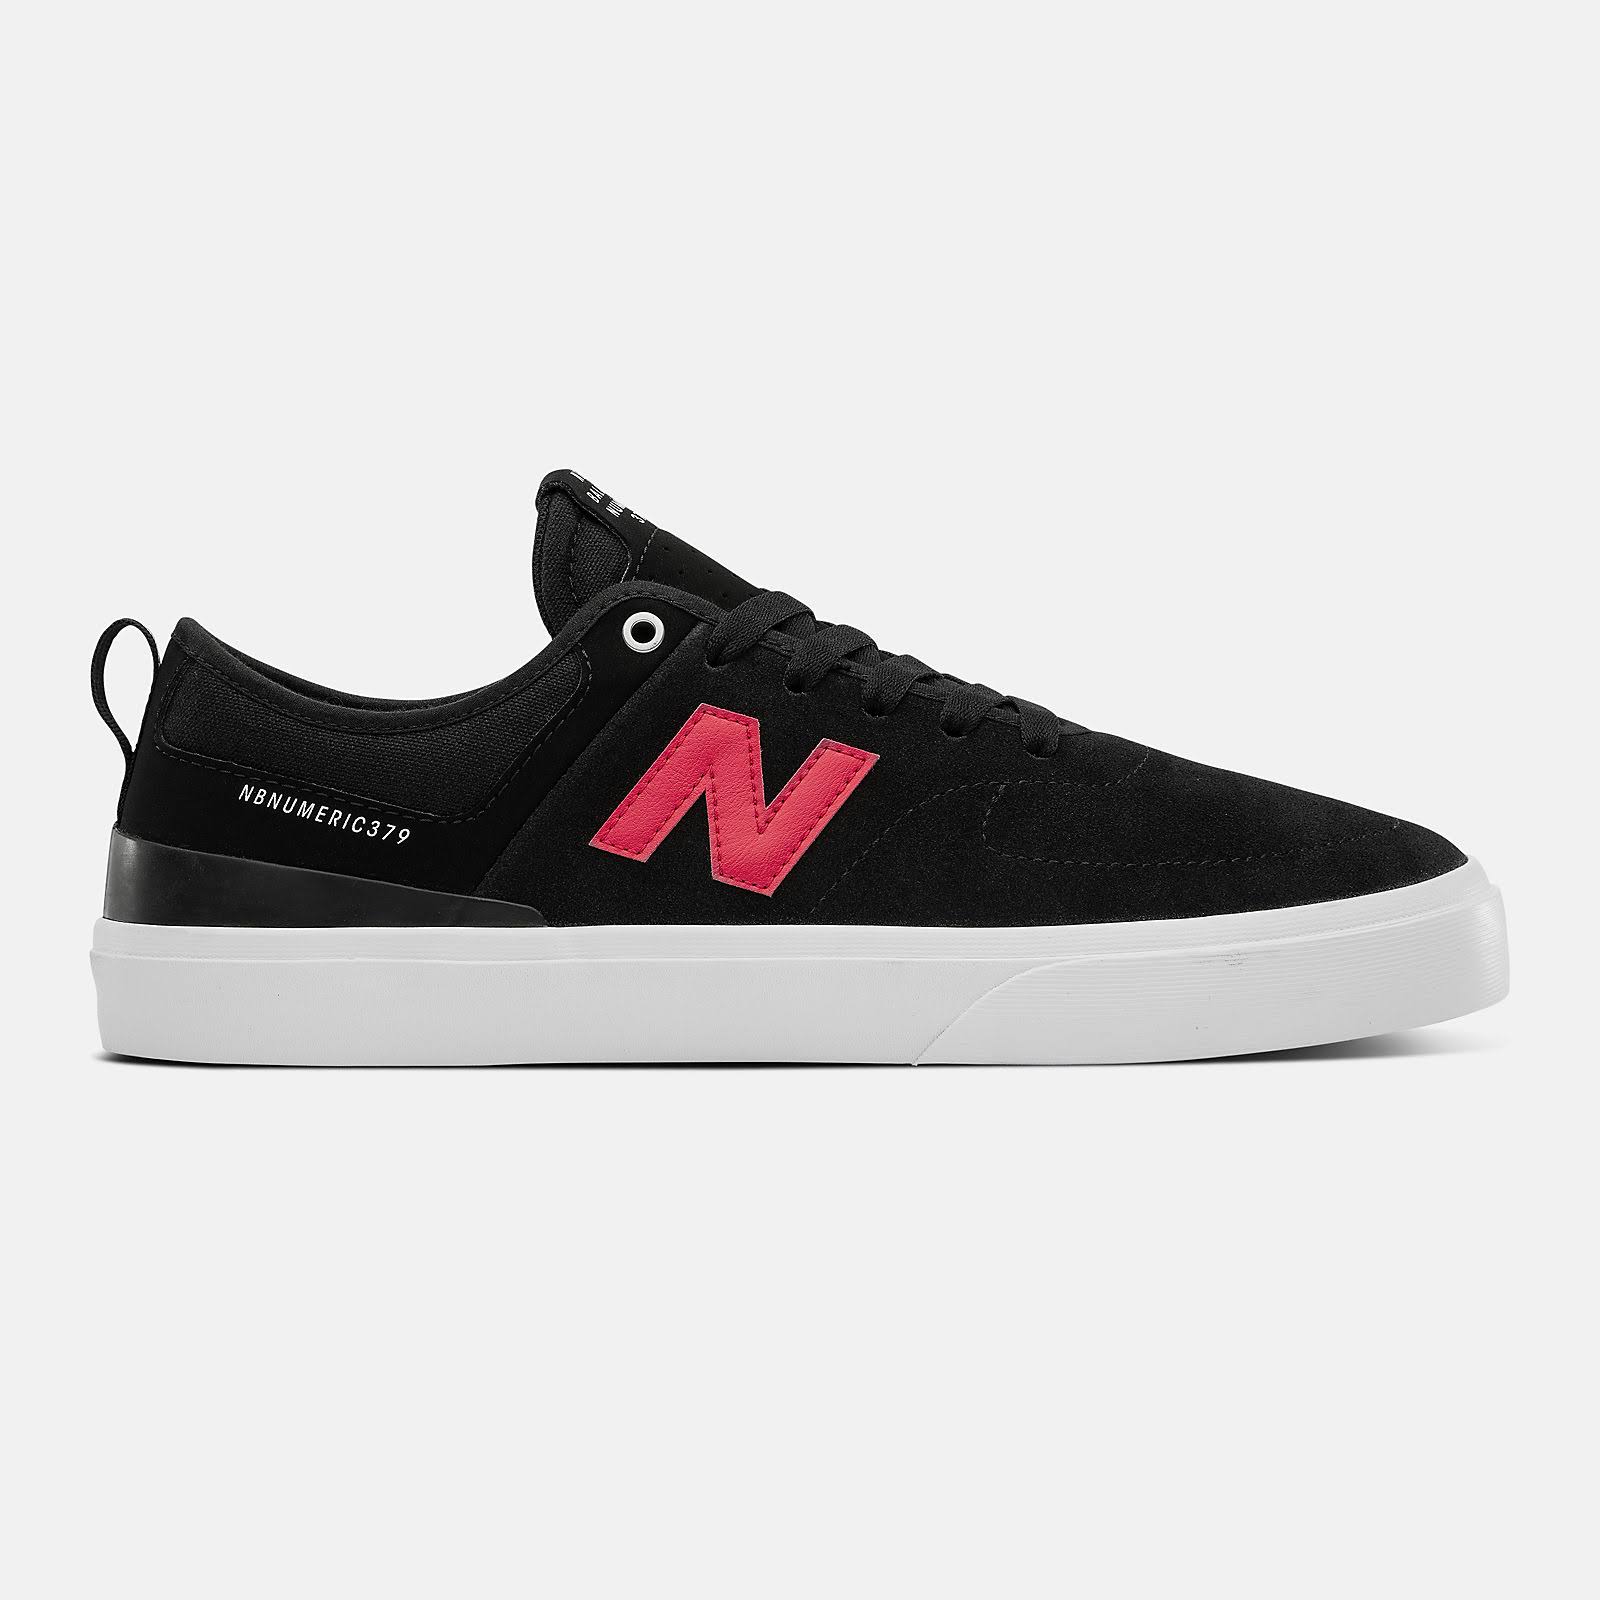 New Balance Numeric 306 Jamie Foy Skate Shoes - Navy / Pink - 9 UK